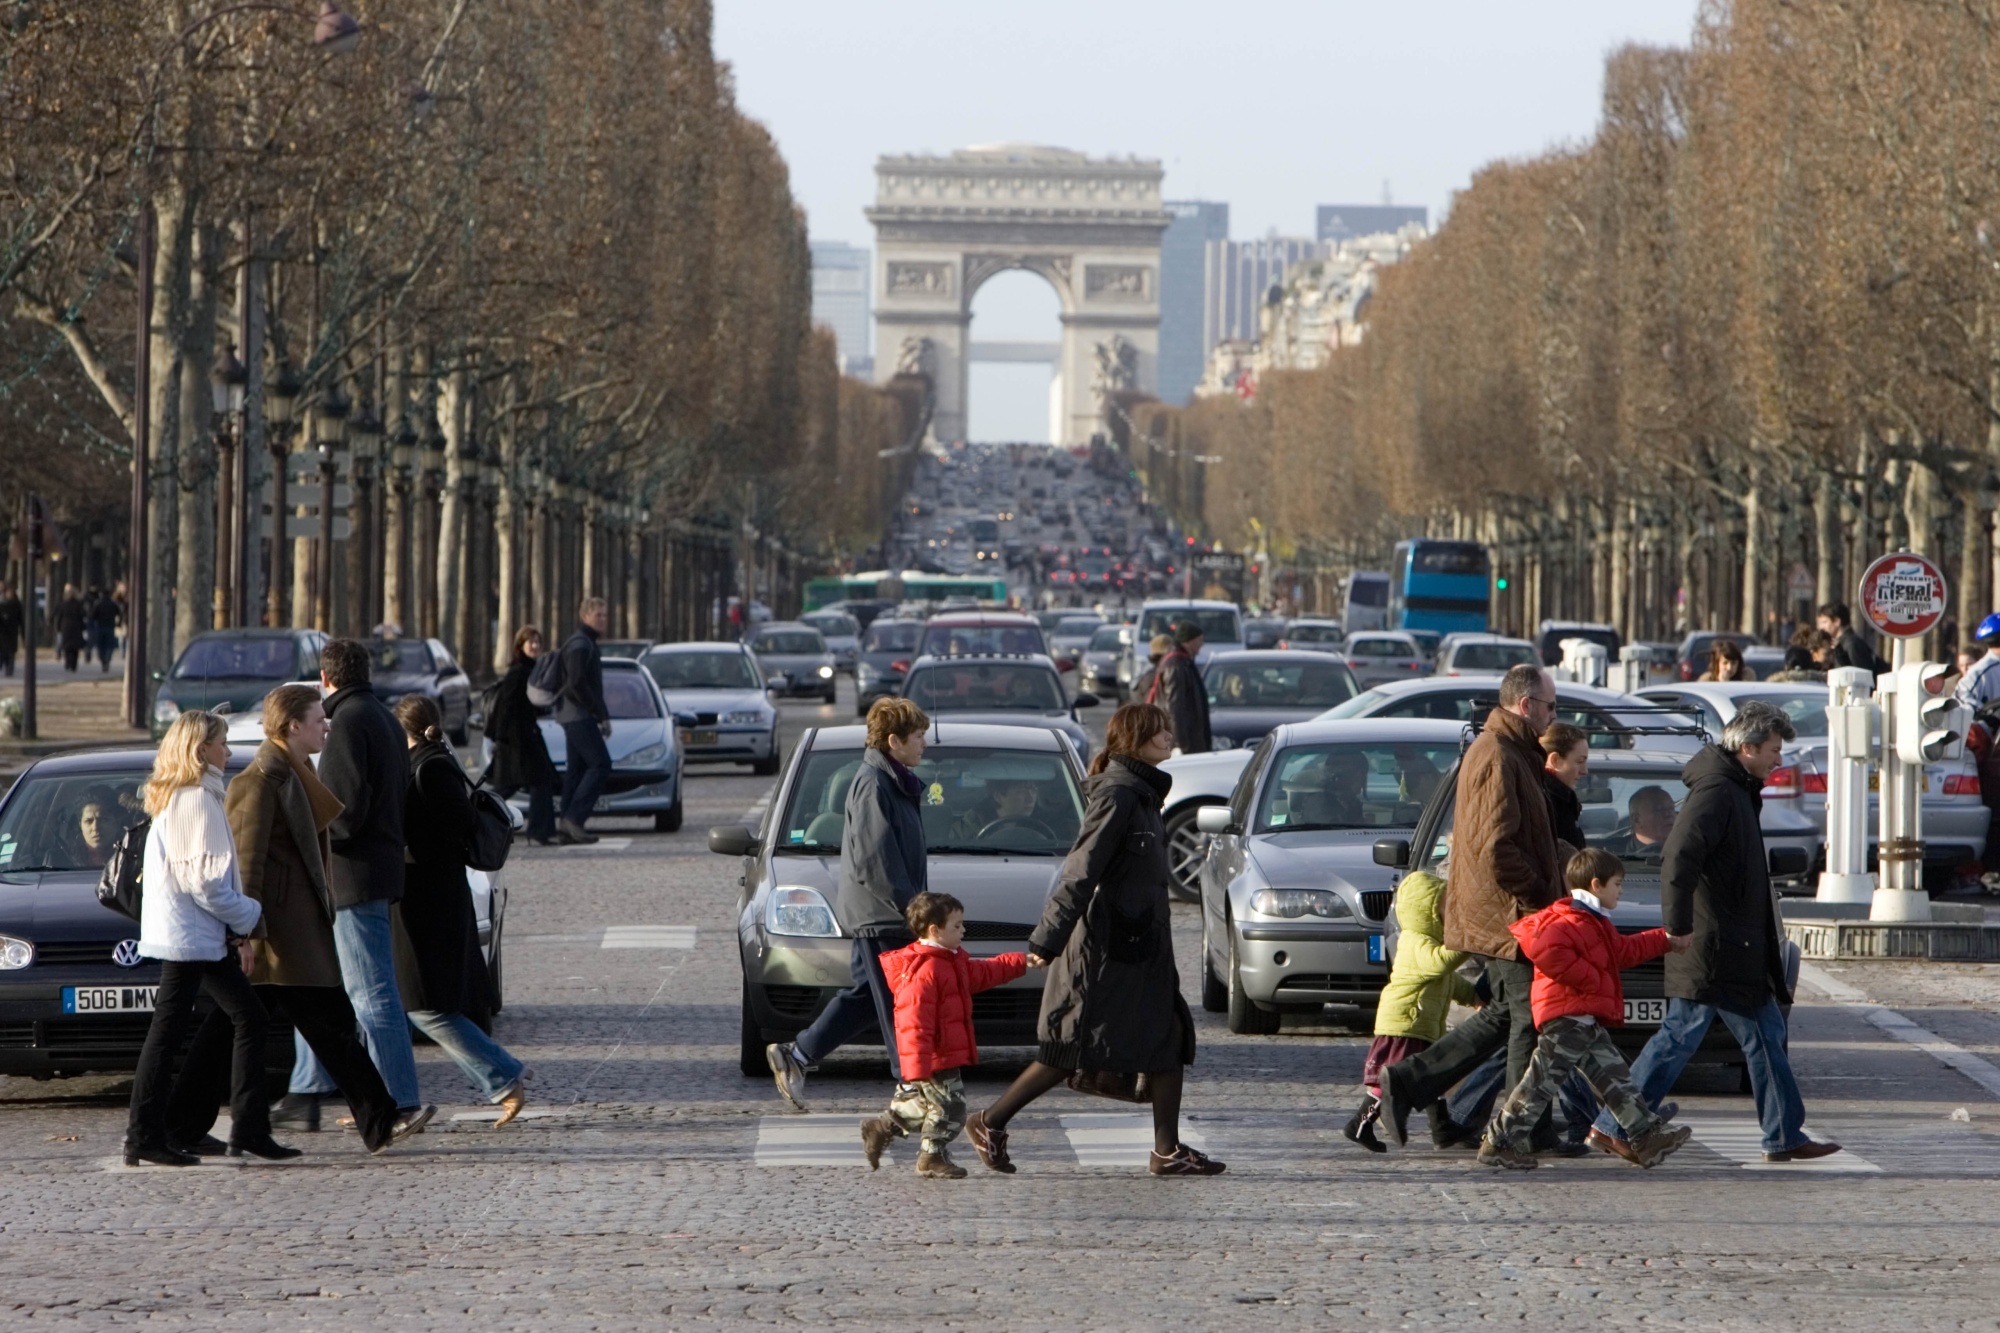 Погода в париже на 14 дней. Париж сейчас. Фото Парижа сейчас. Пешеходный переход во Франции. Париж раньше и сейчас.